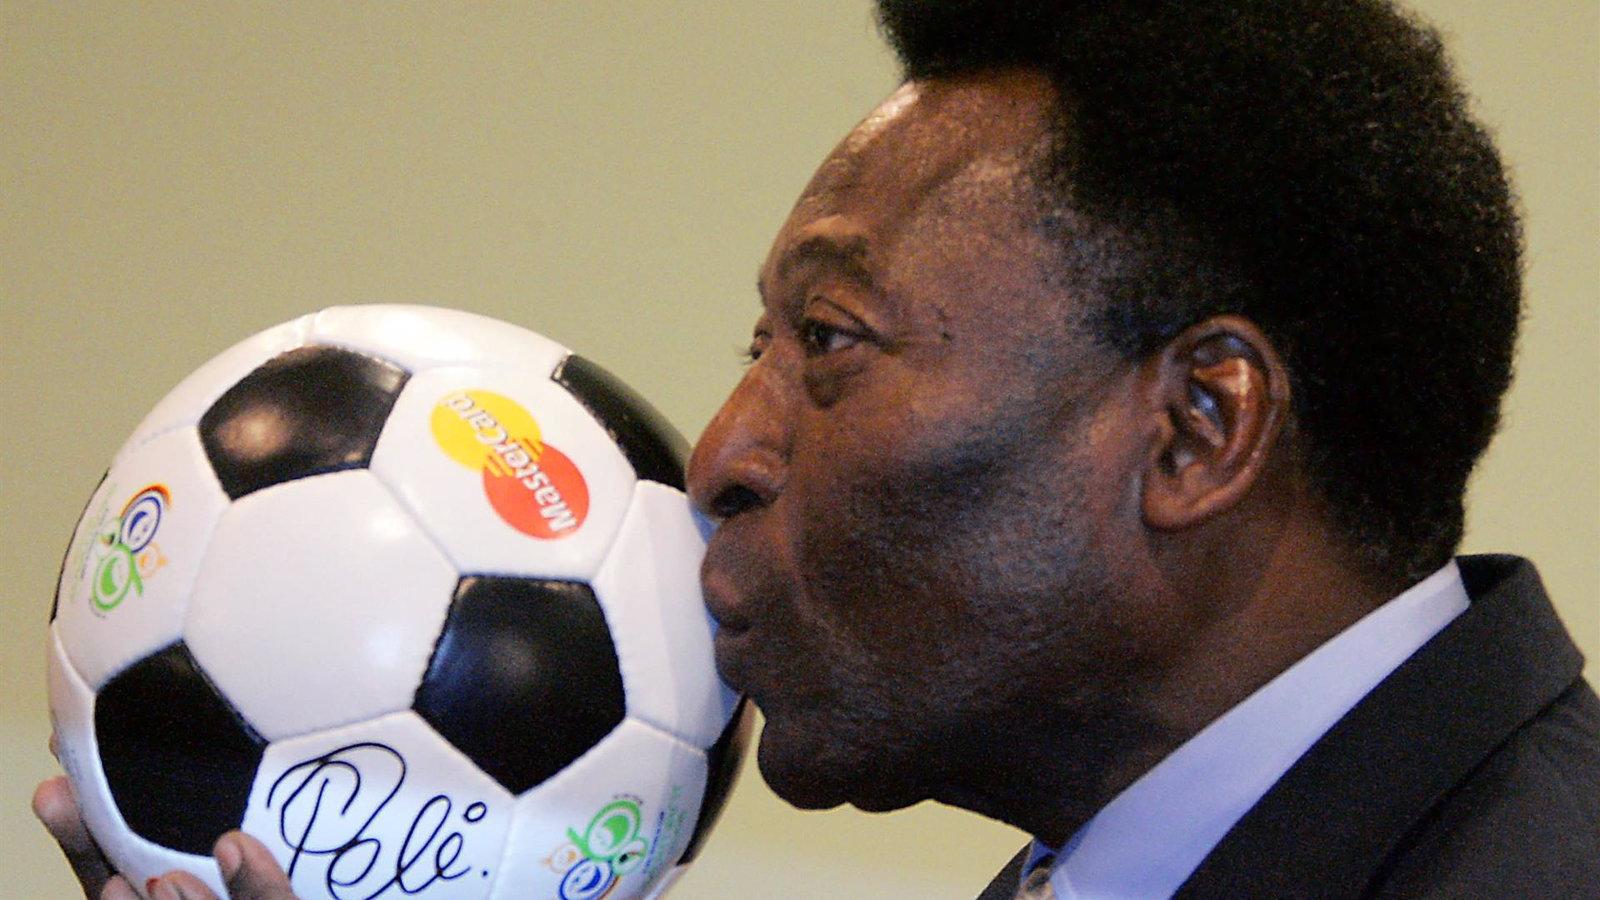  El exfutbolista brasileño Pelé muere a los 82 años